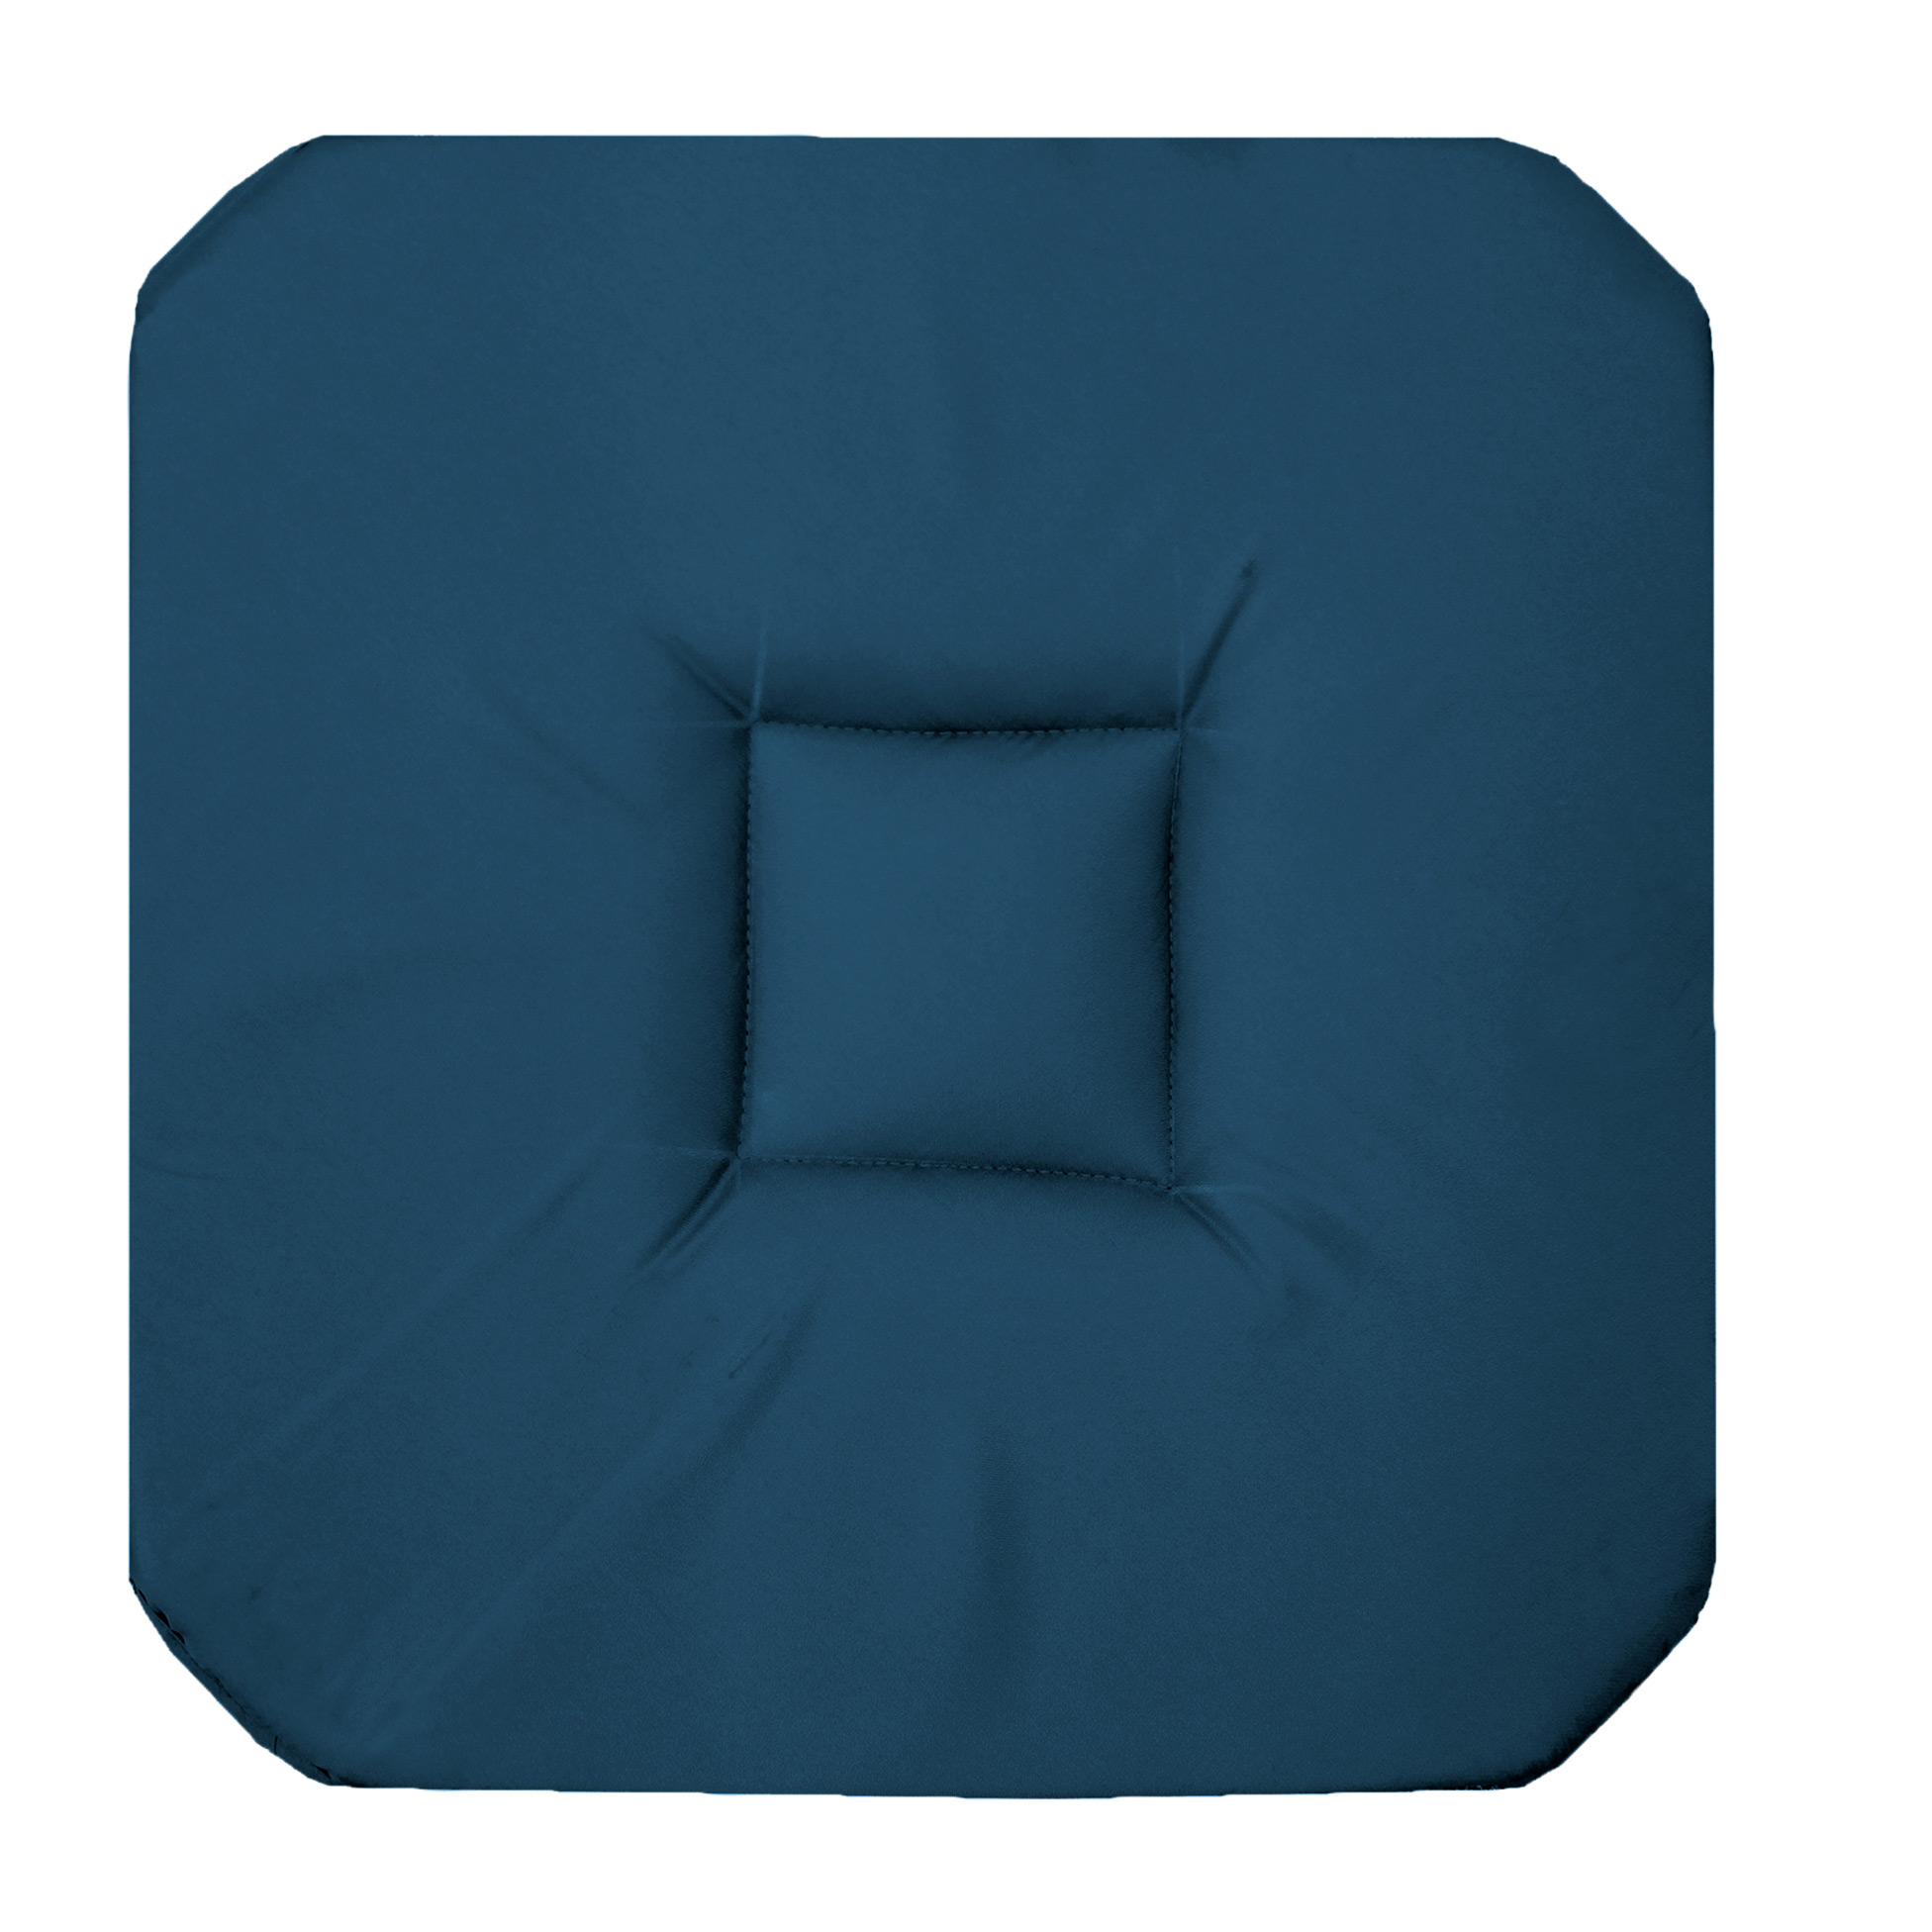 Coussin galette de chaise 4 rabats 36 x 36 cm bleu marine panama